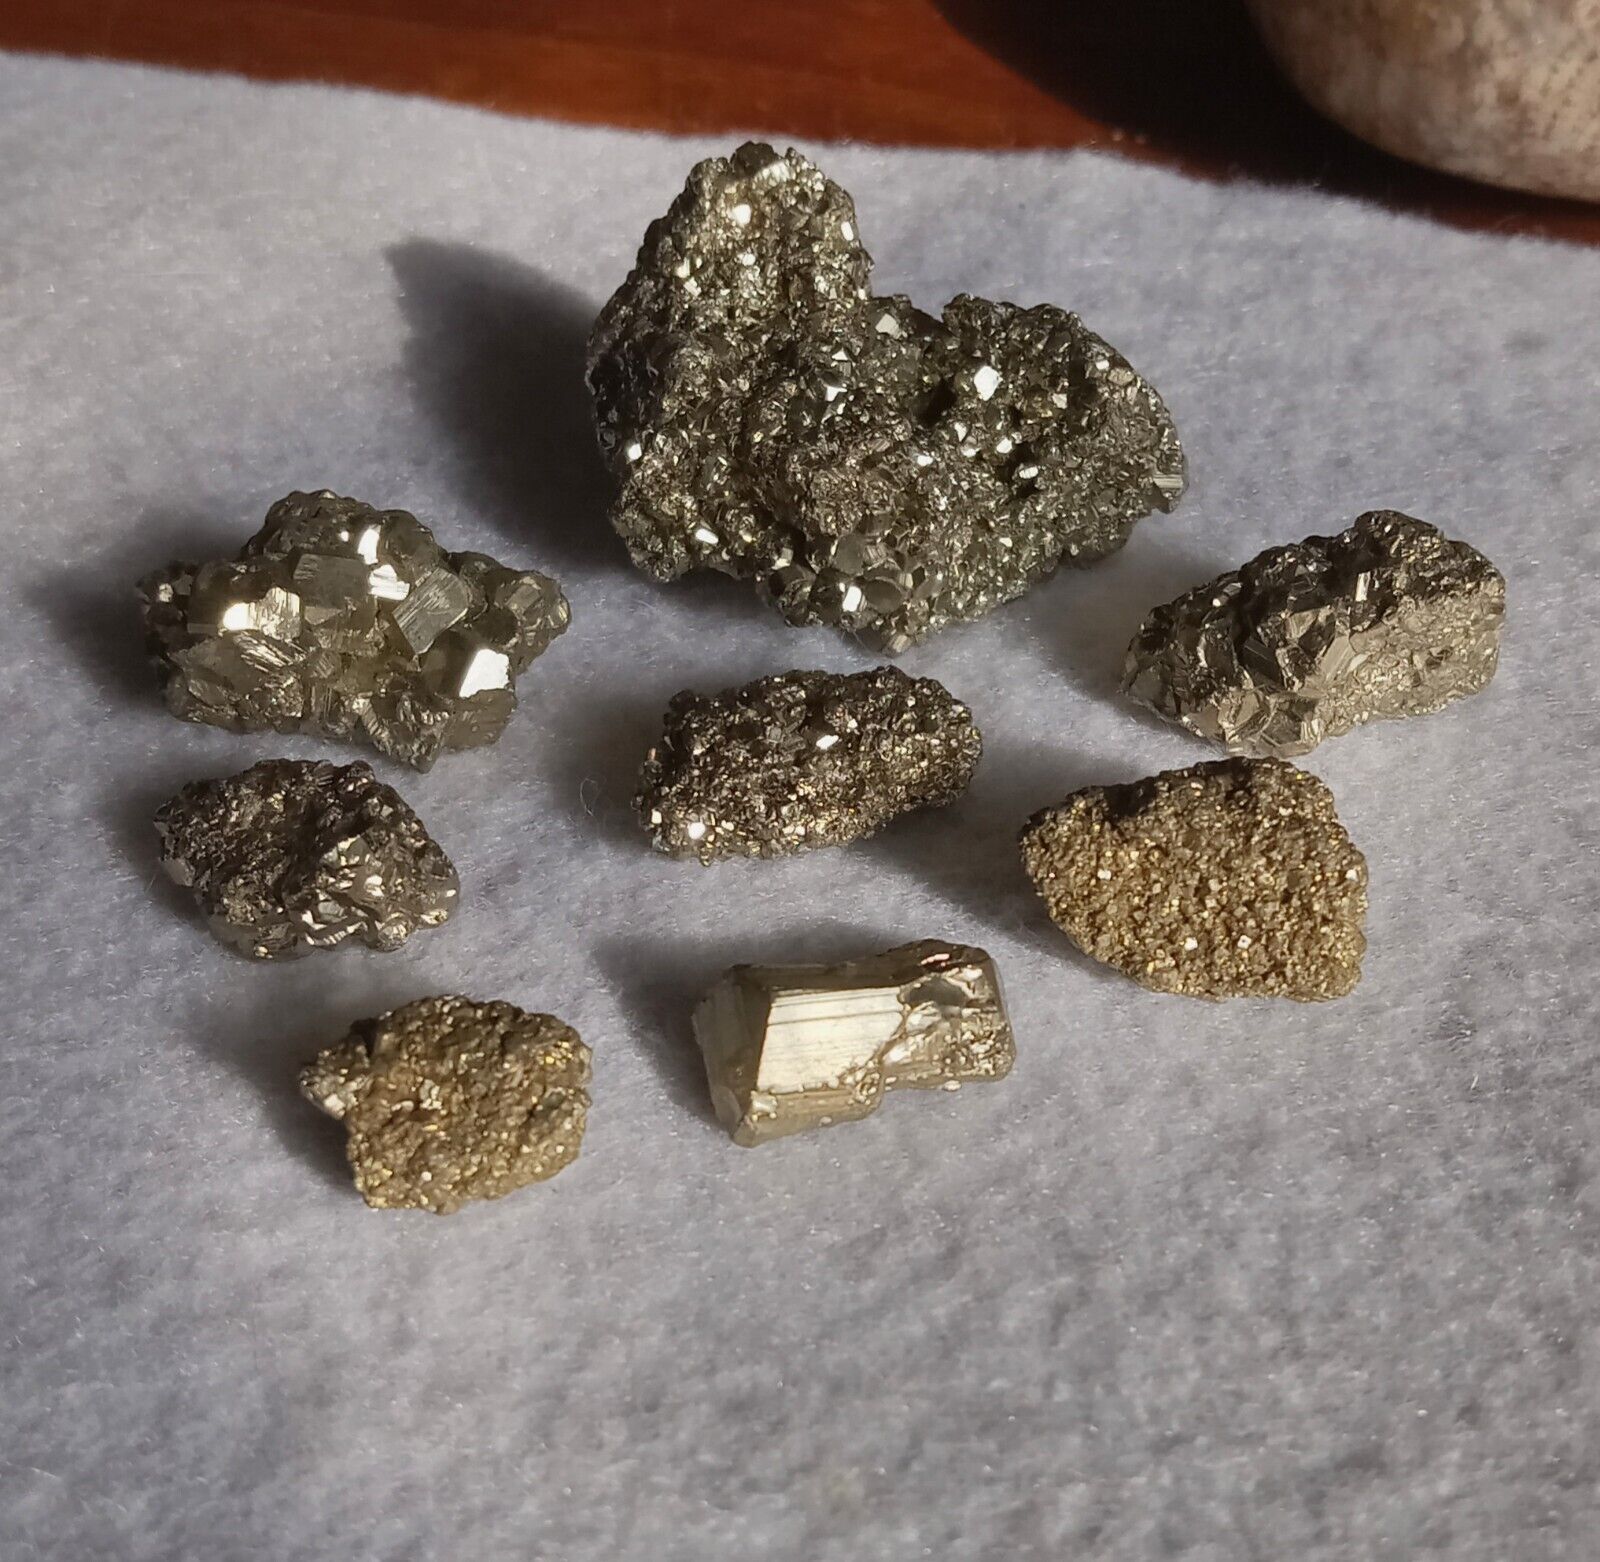 55 Grams Of Beautiful Pyrite